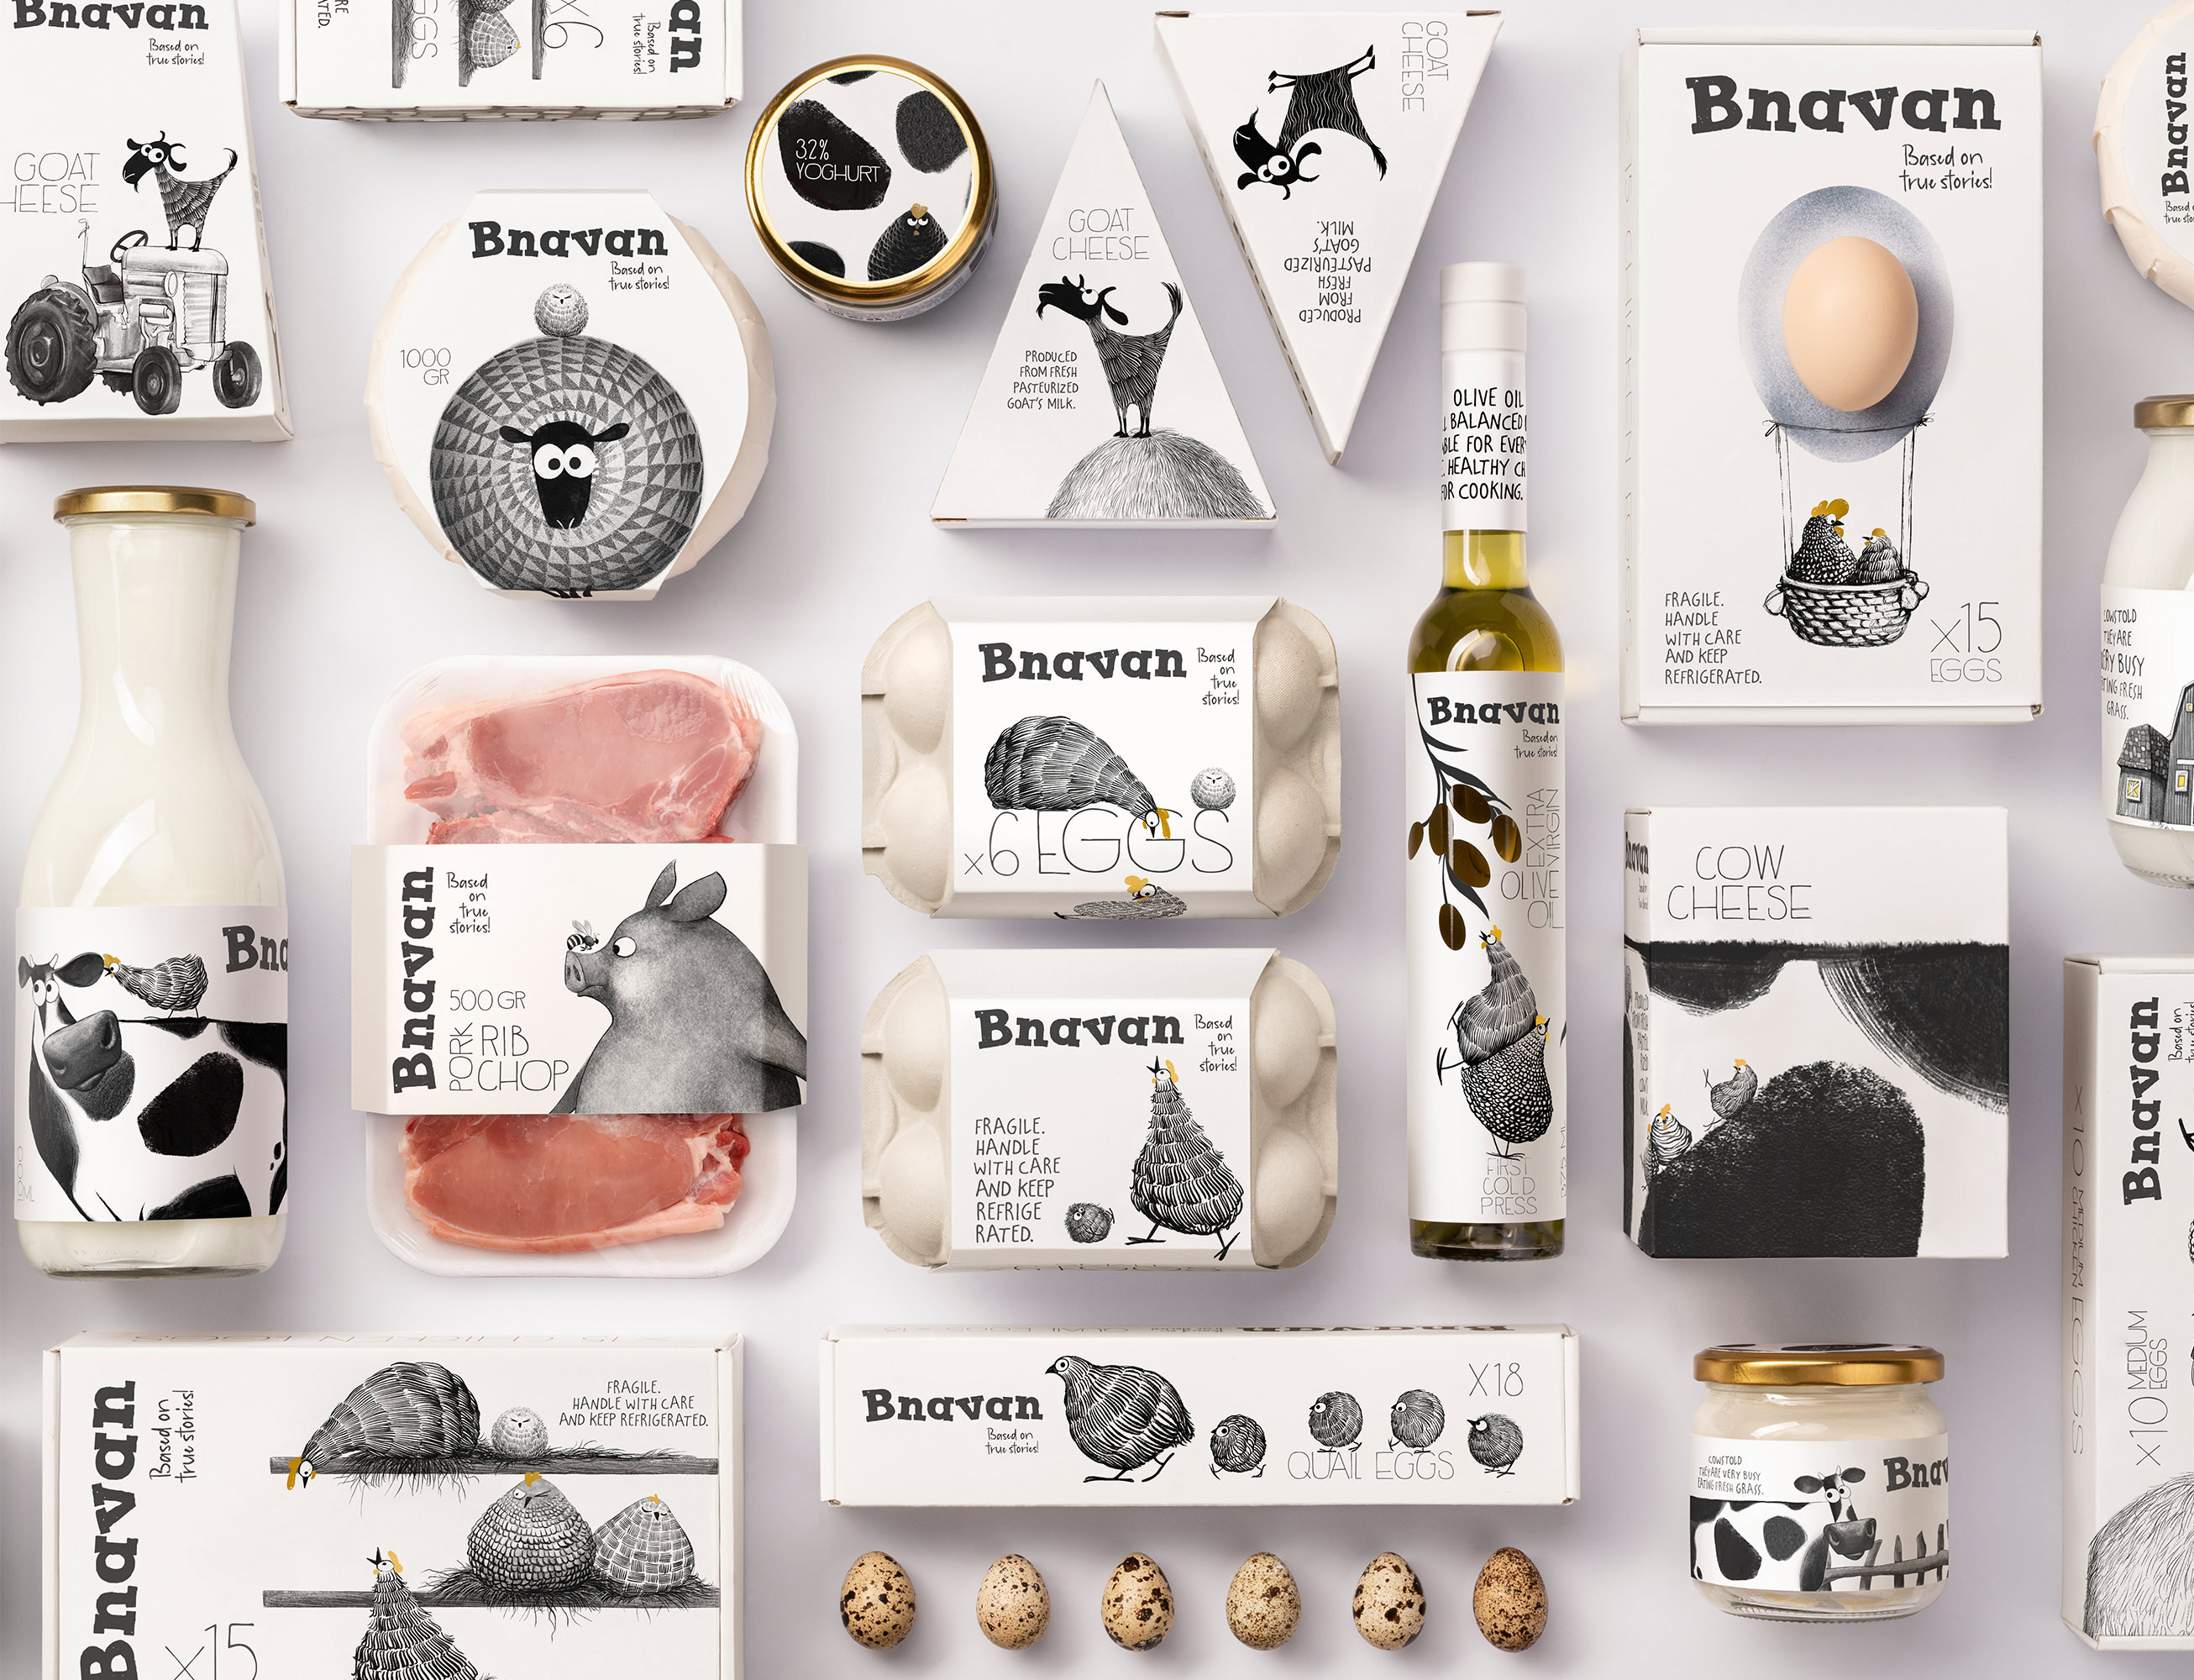 Backbone Branding Creates “Bnavan” Brand Identity and Packaging Design